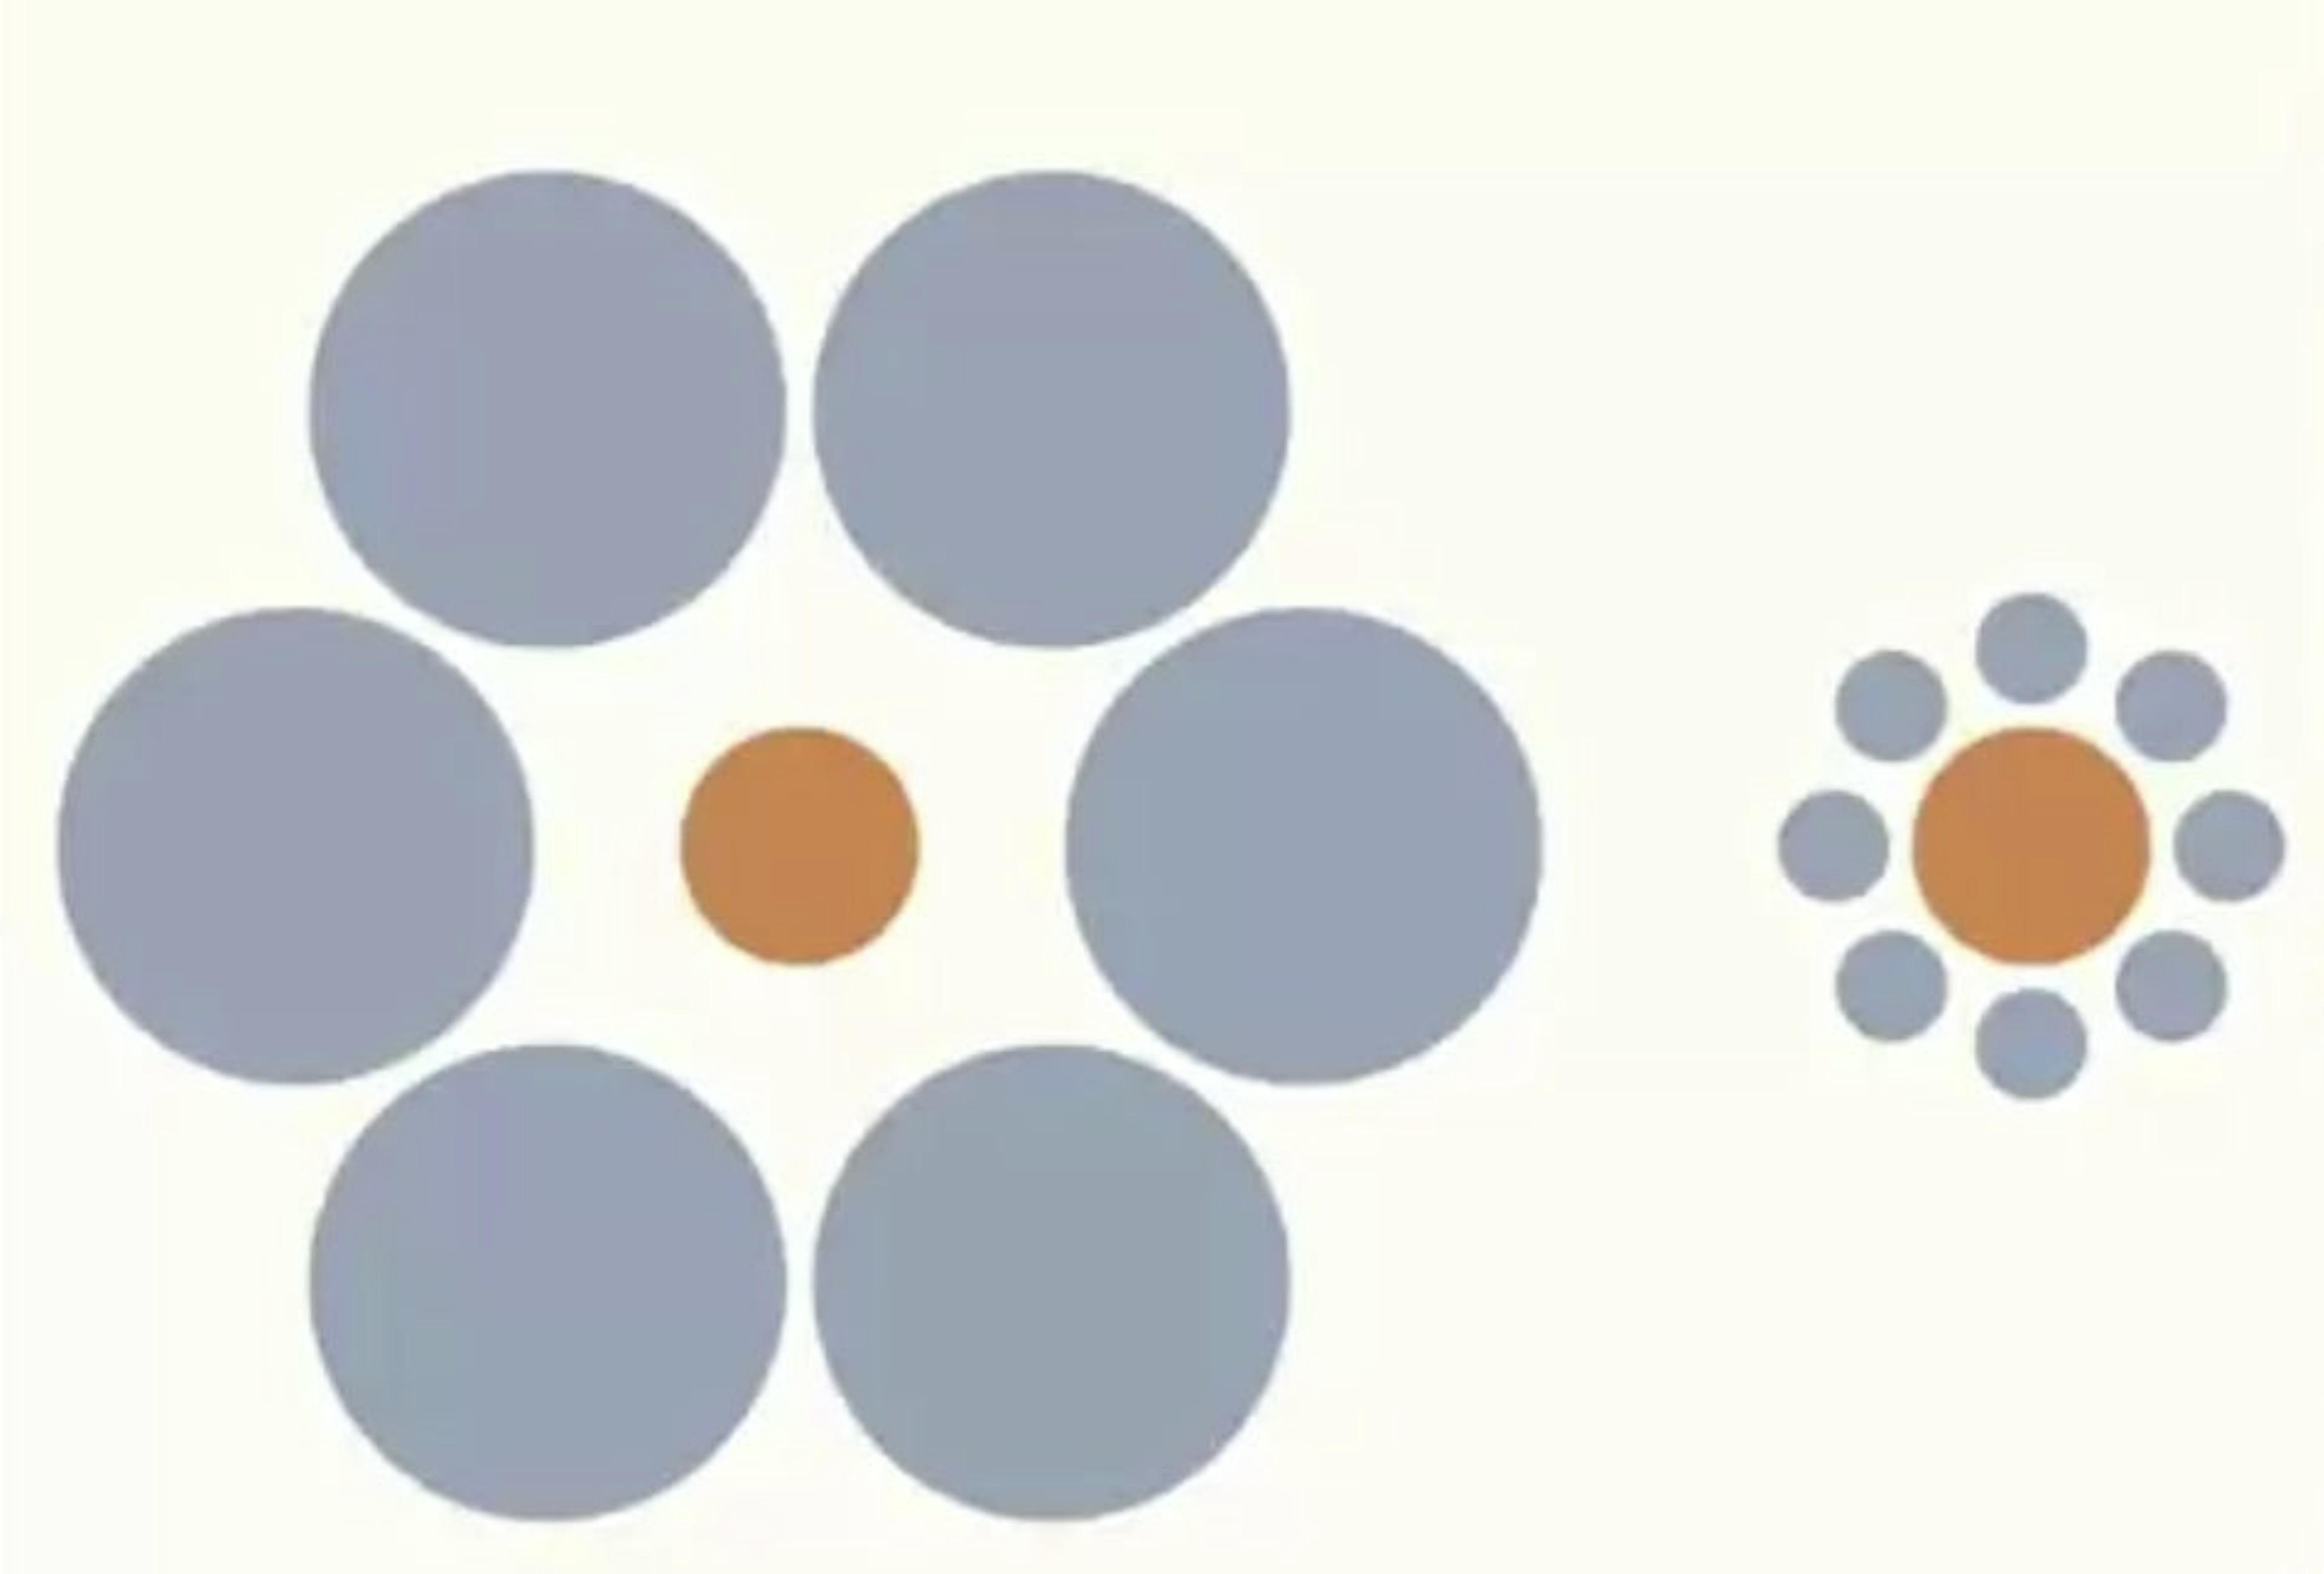 L'illusion d'Ebbinghaus. Capture d'écran de la conférence du Dr Santos sur Coursera